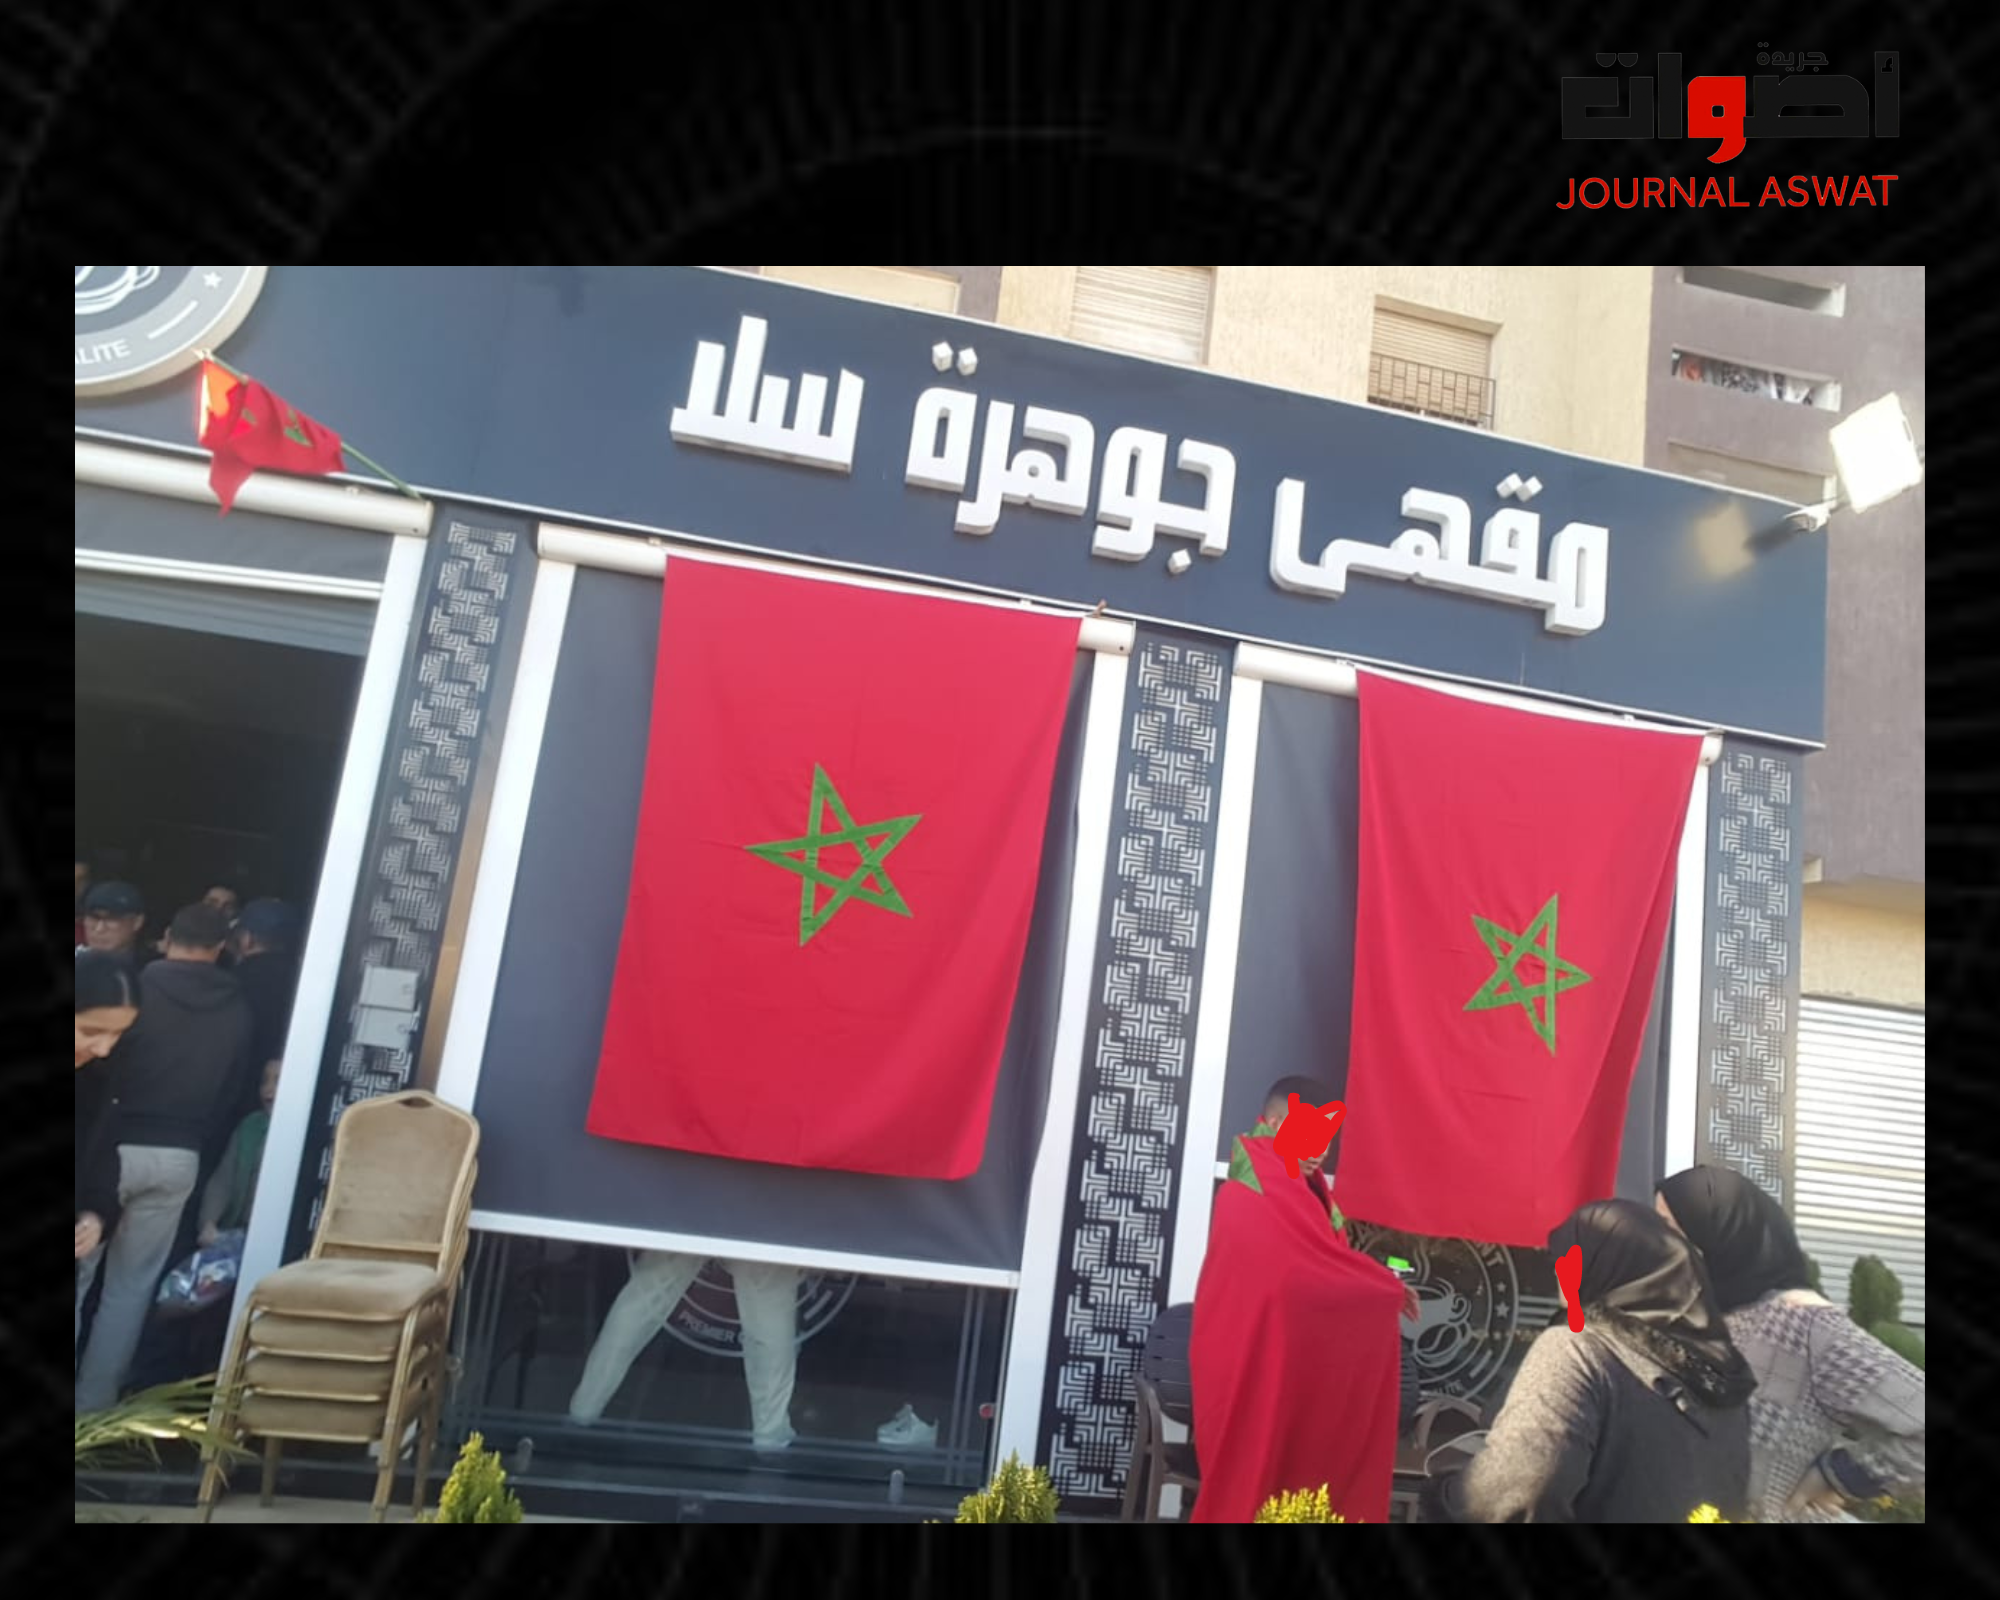 سعار أسعار المقاهي تزامنا مع لقاء المنتخب المغربي والأجهزة الرقابية نائمة في العسل (1)